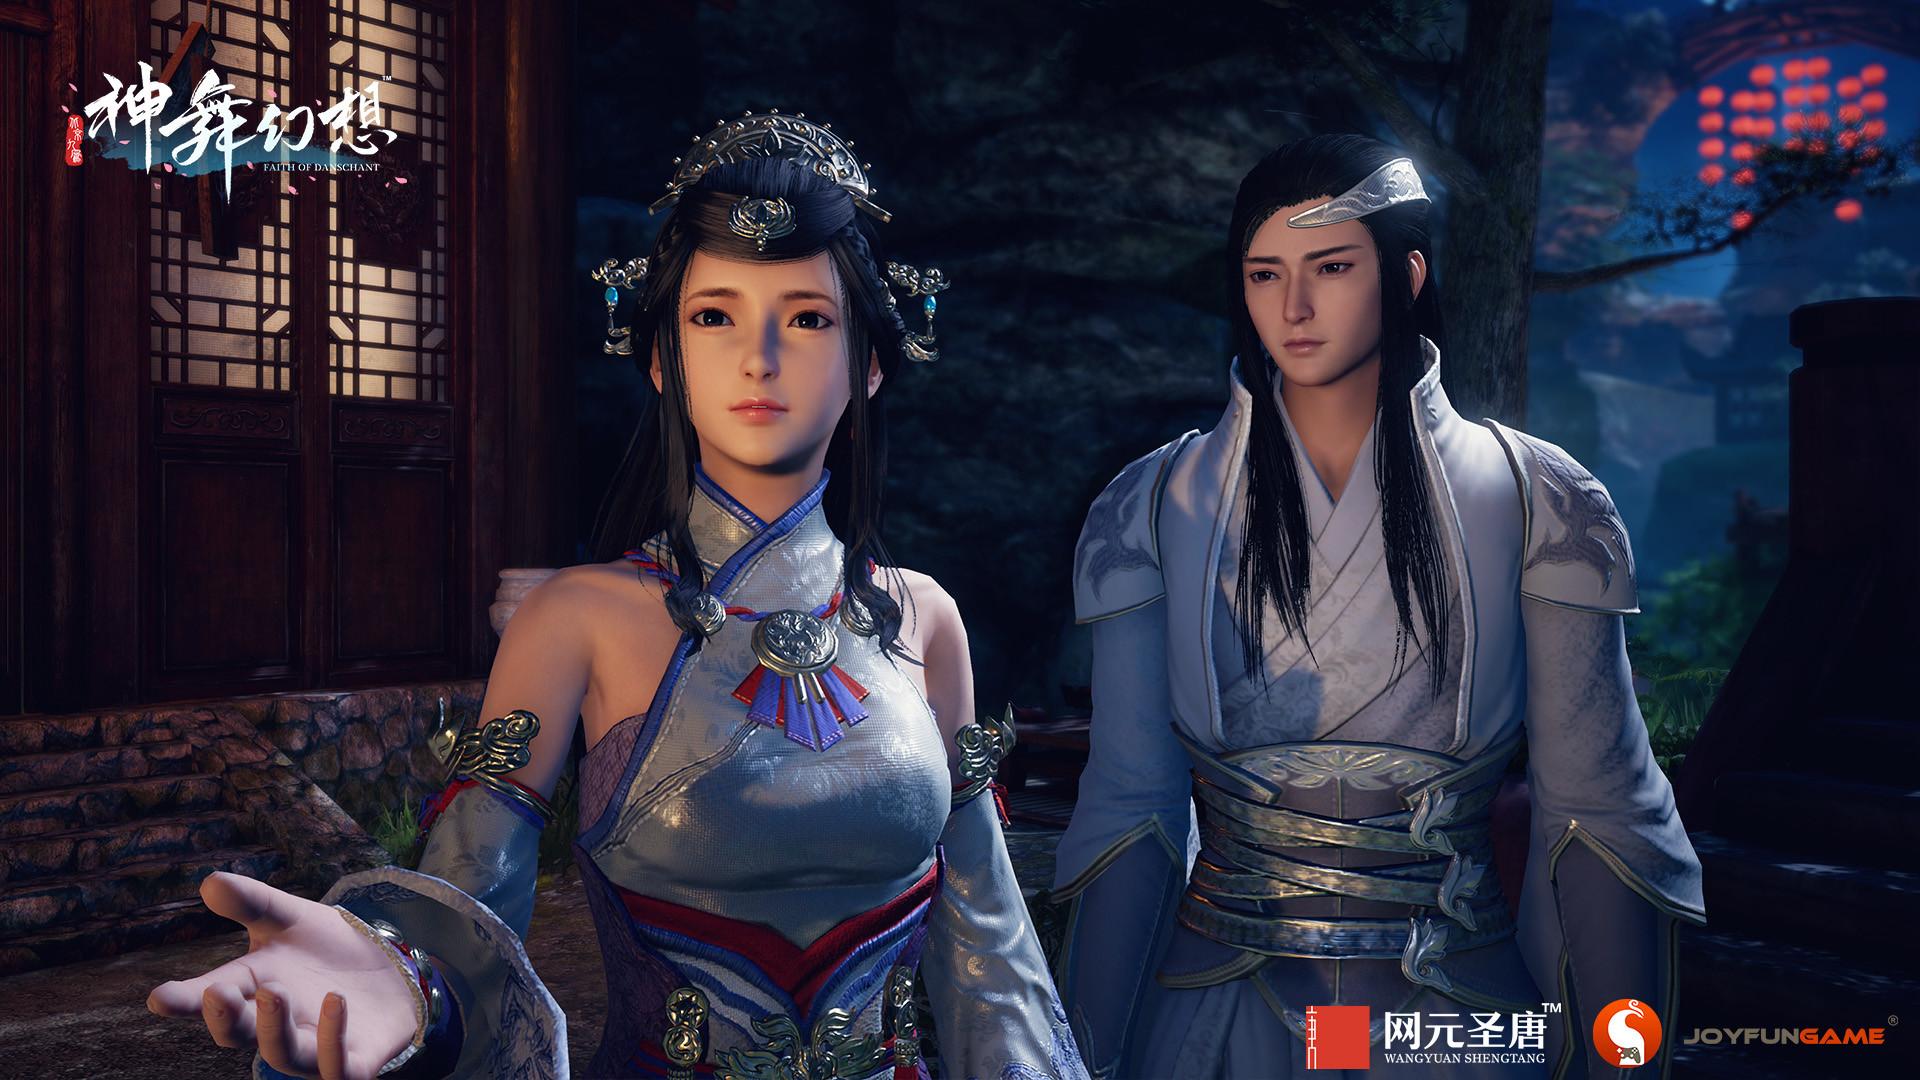 Screenshot №4 from game 神舞幻想 Faith of Danschant